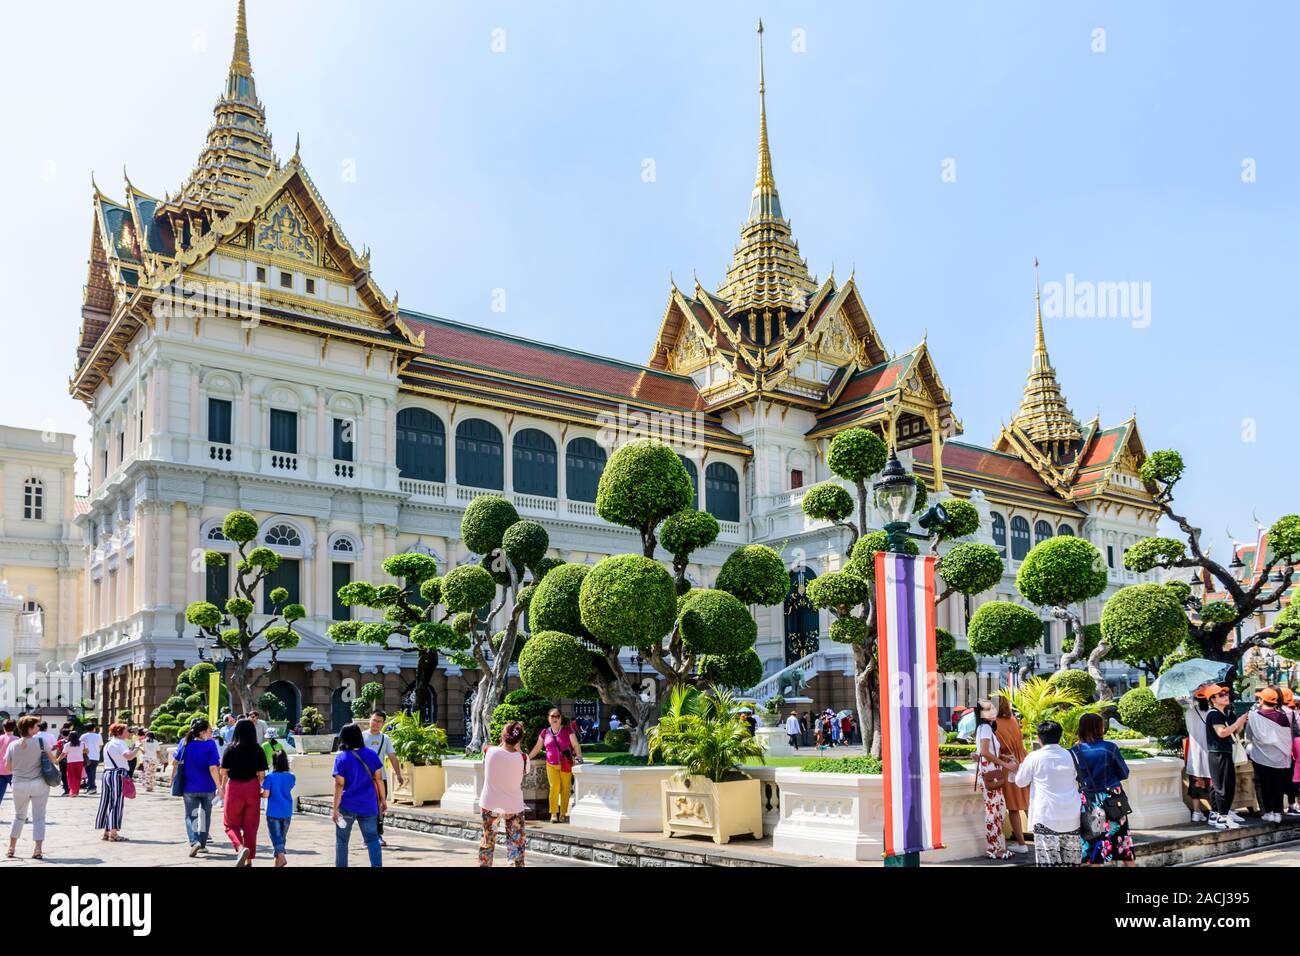 Bangkok, Thailand - 17. November 2019: Touristen im Grand Palace eine bekannte touristische Destination mit dem Tempel des Smaragd-Buddha. Stockfoto